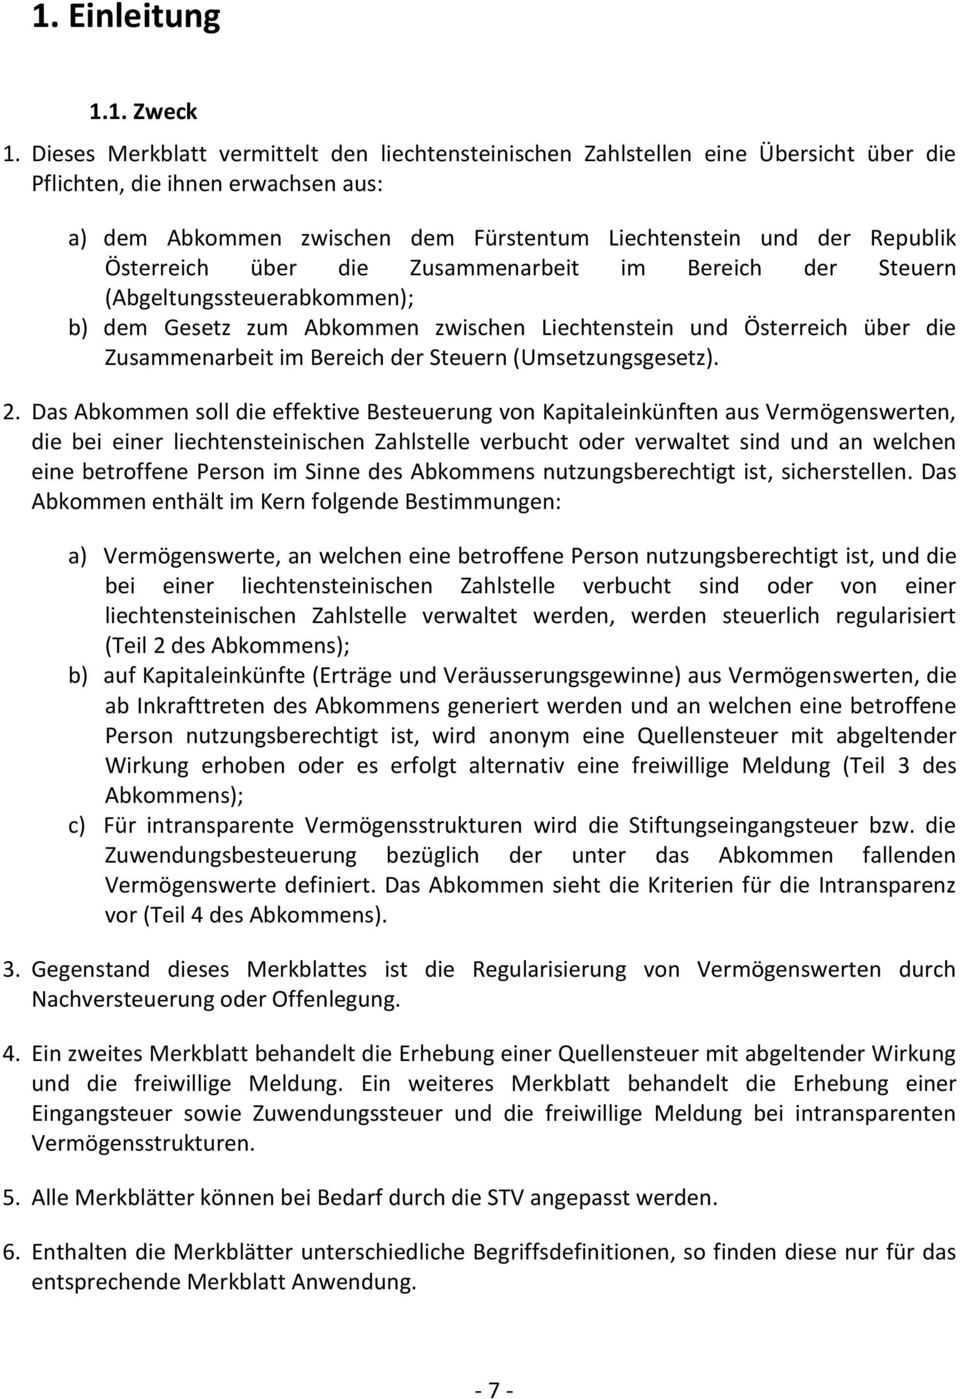 Österreich über die Zusammenarbeit im Bereich der Steuern (Abgeltungssteuerabkommen); b) dem Gesetz zum Abkommen zwischen Liechtenstein und Österreich über die Zusammenarbeit im Bereich der Steuern